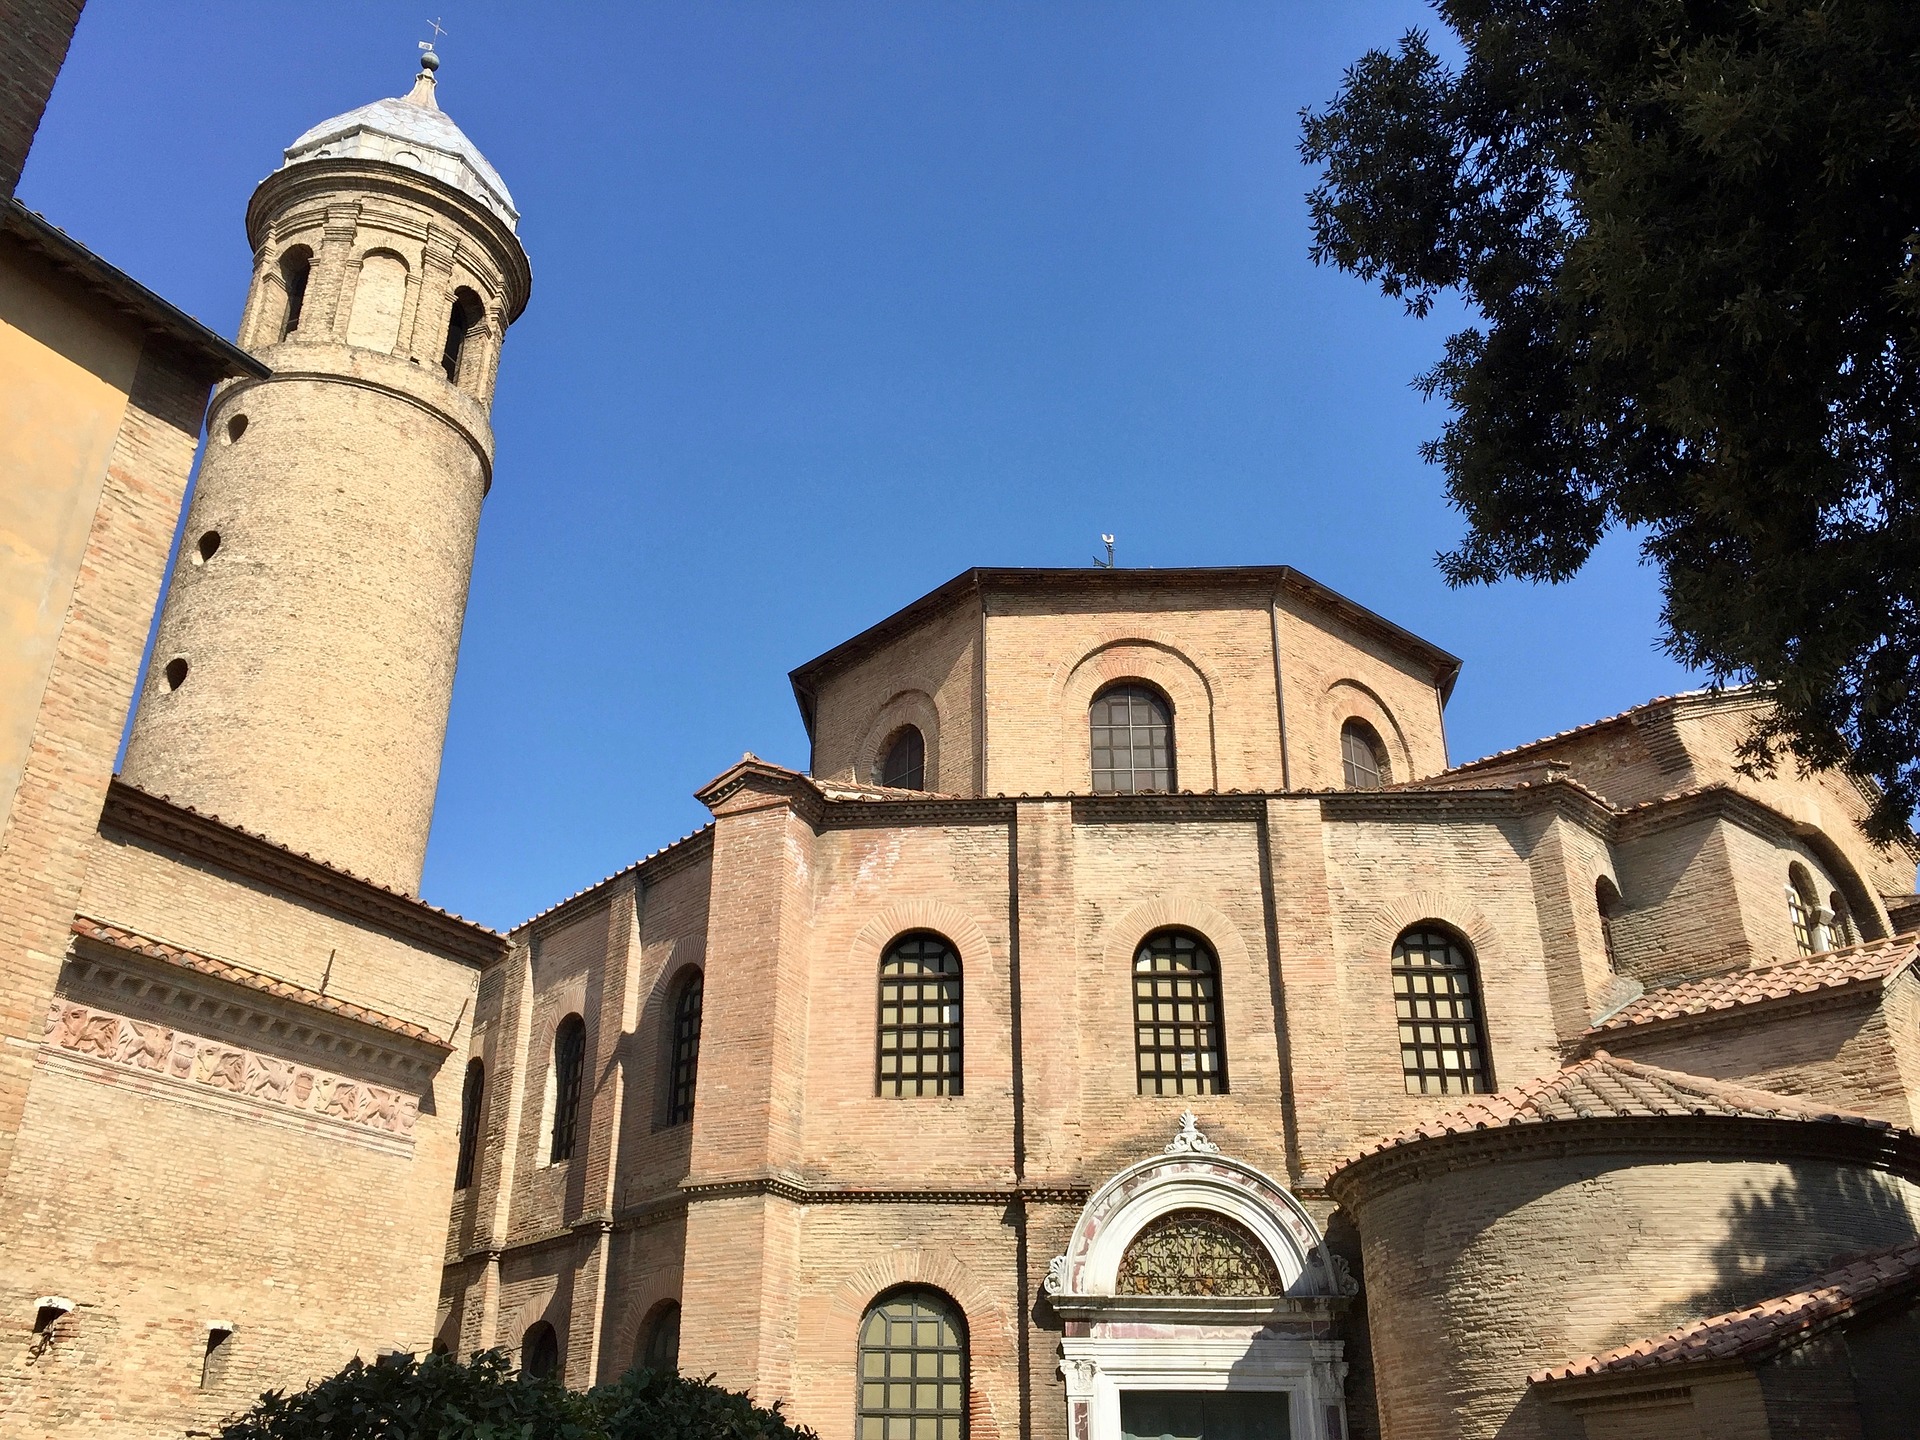 サン ヴィターレ聖堂 ラヴェンナの初期キリスト教建築物群 世界遺産オンラインガイド